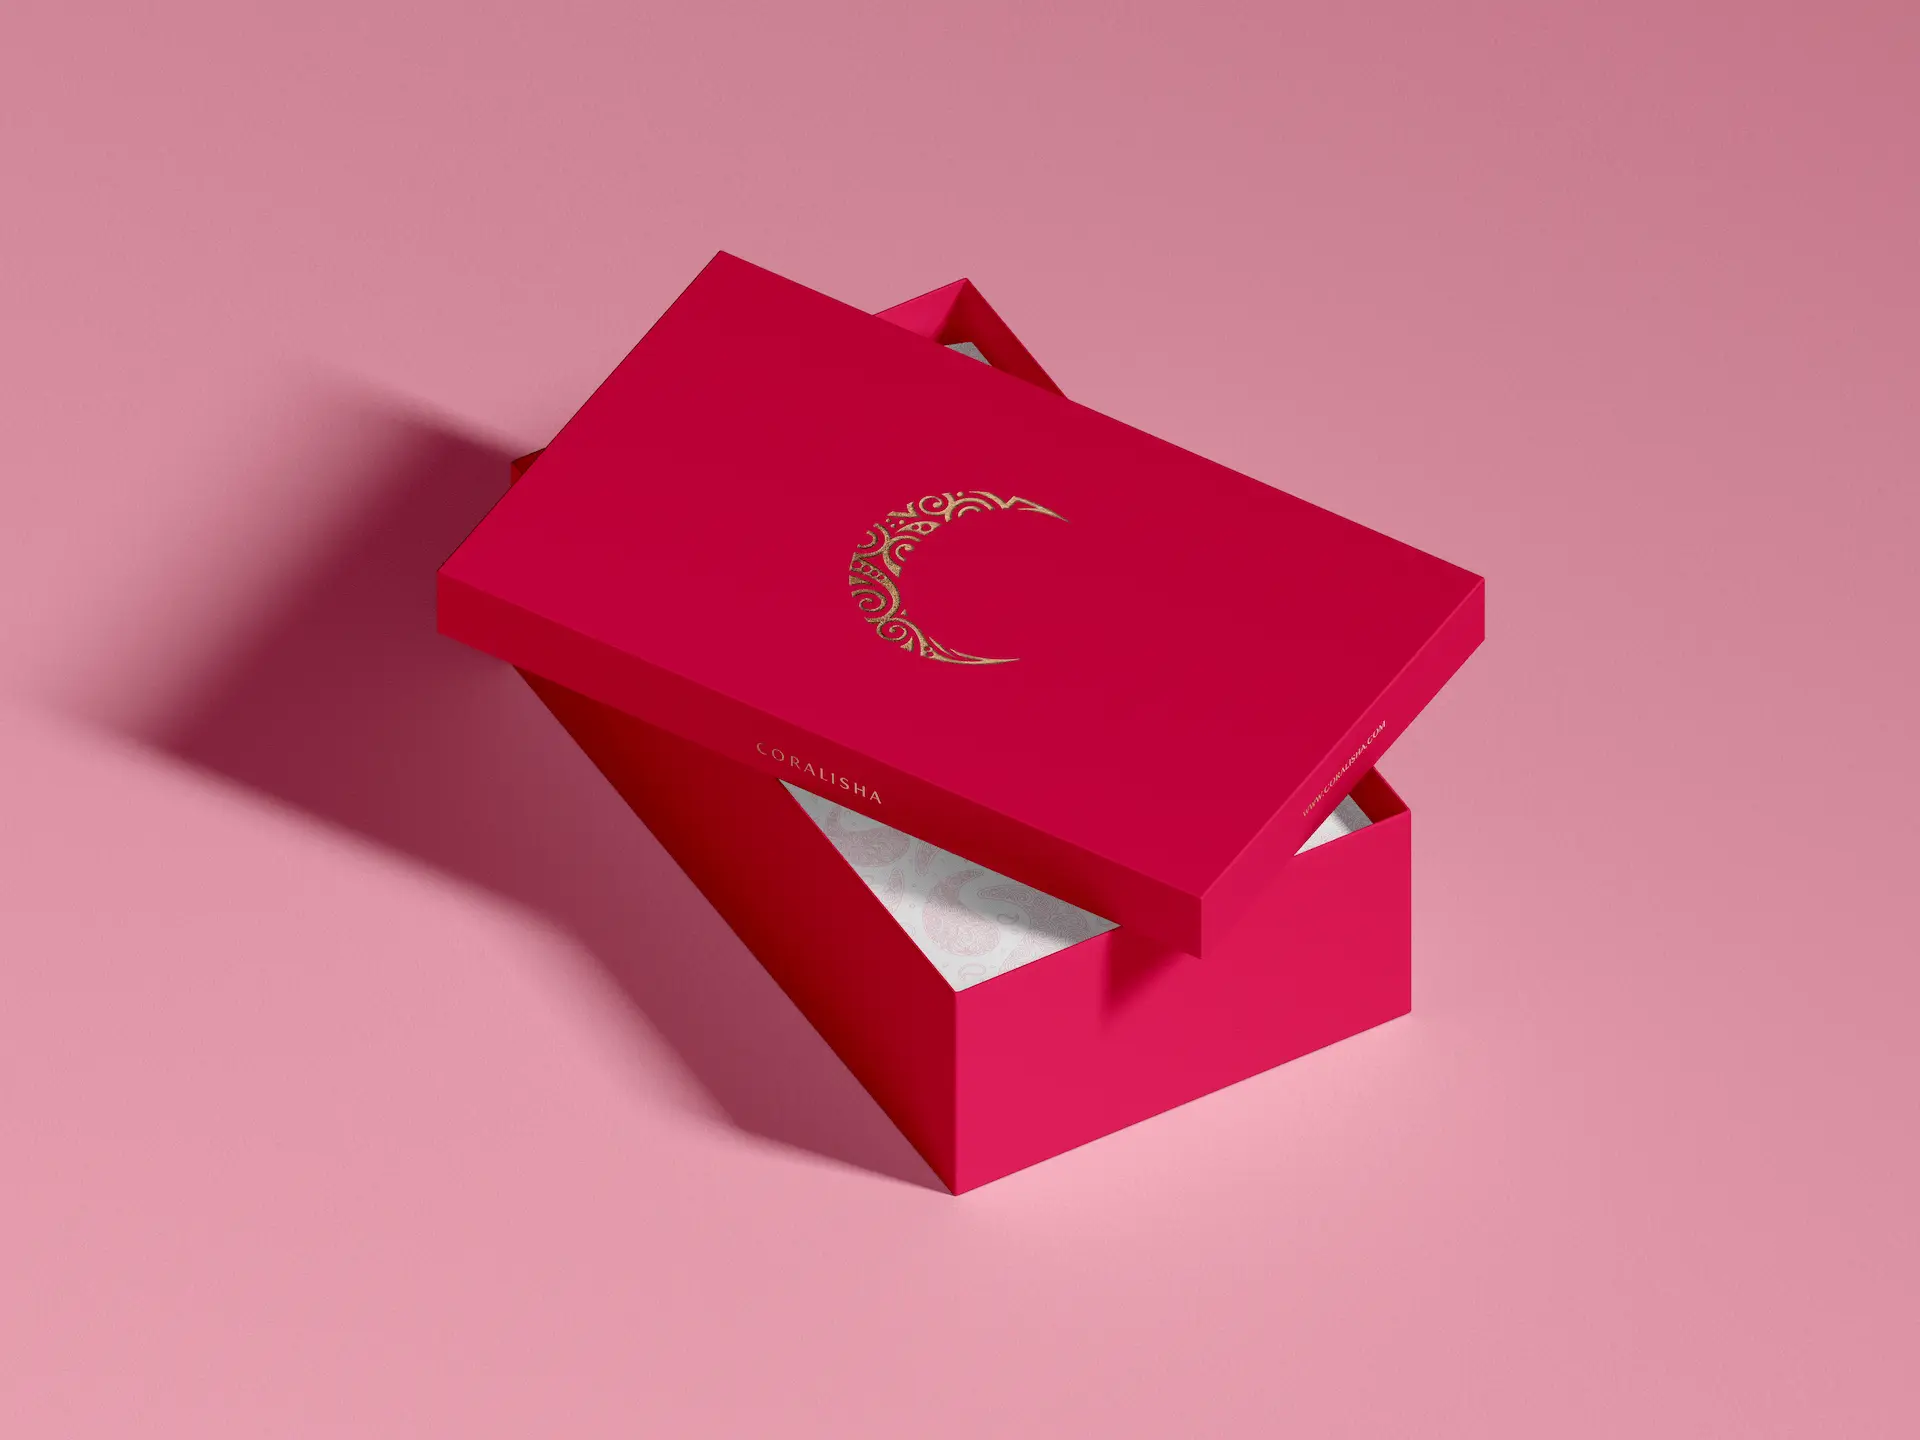 caja de zapatos roja sobre fondo rosa con logotipo marca coralisha estampado en dorado